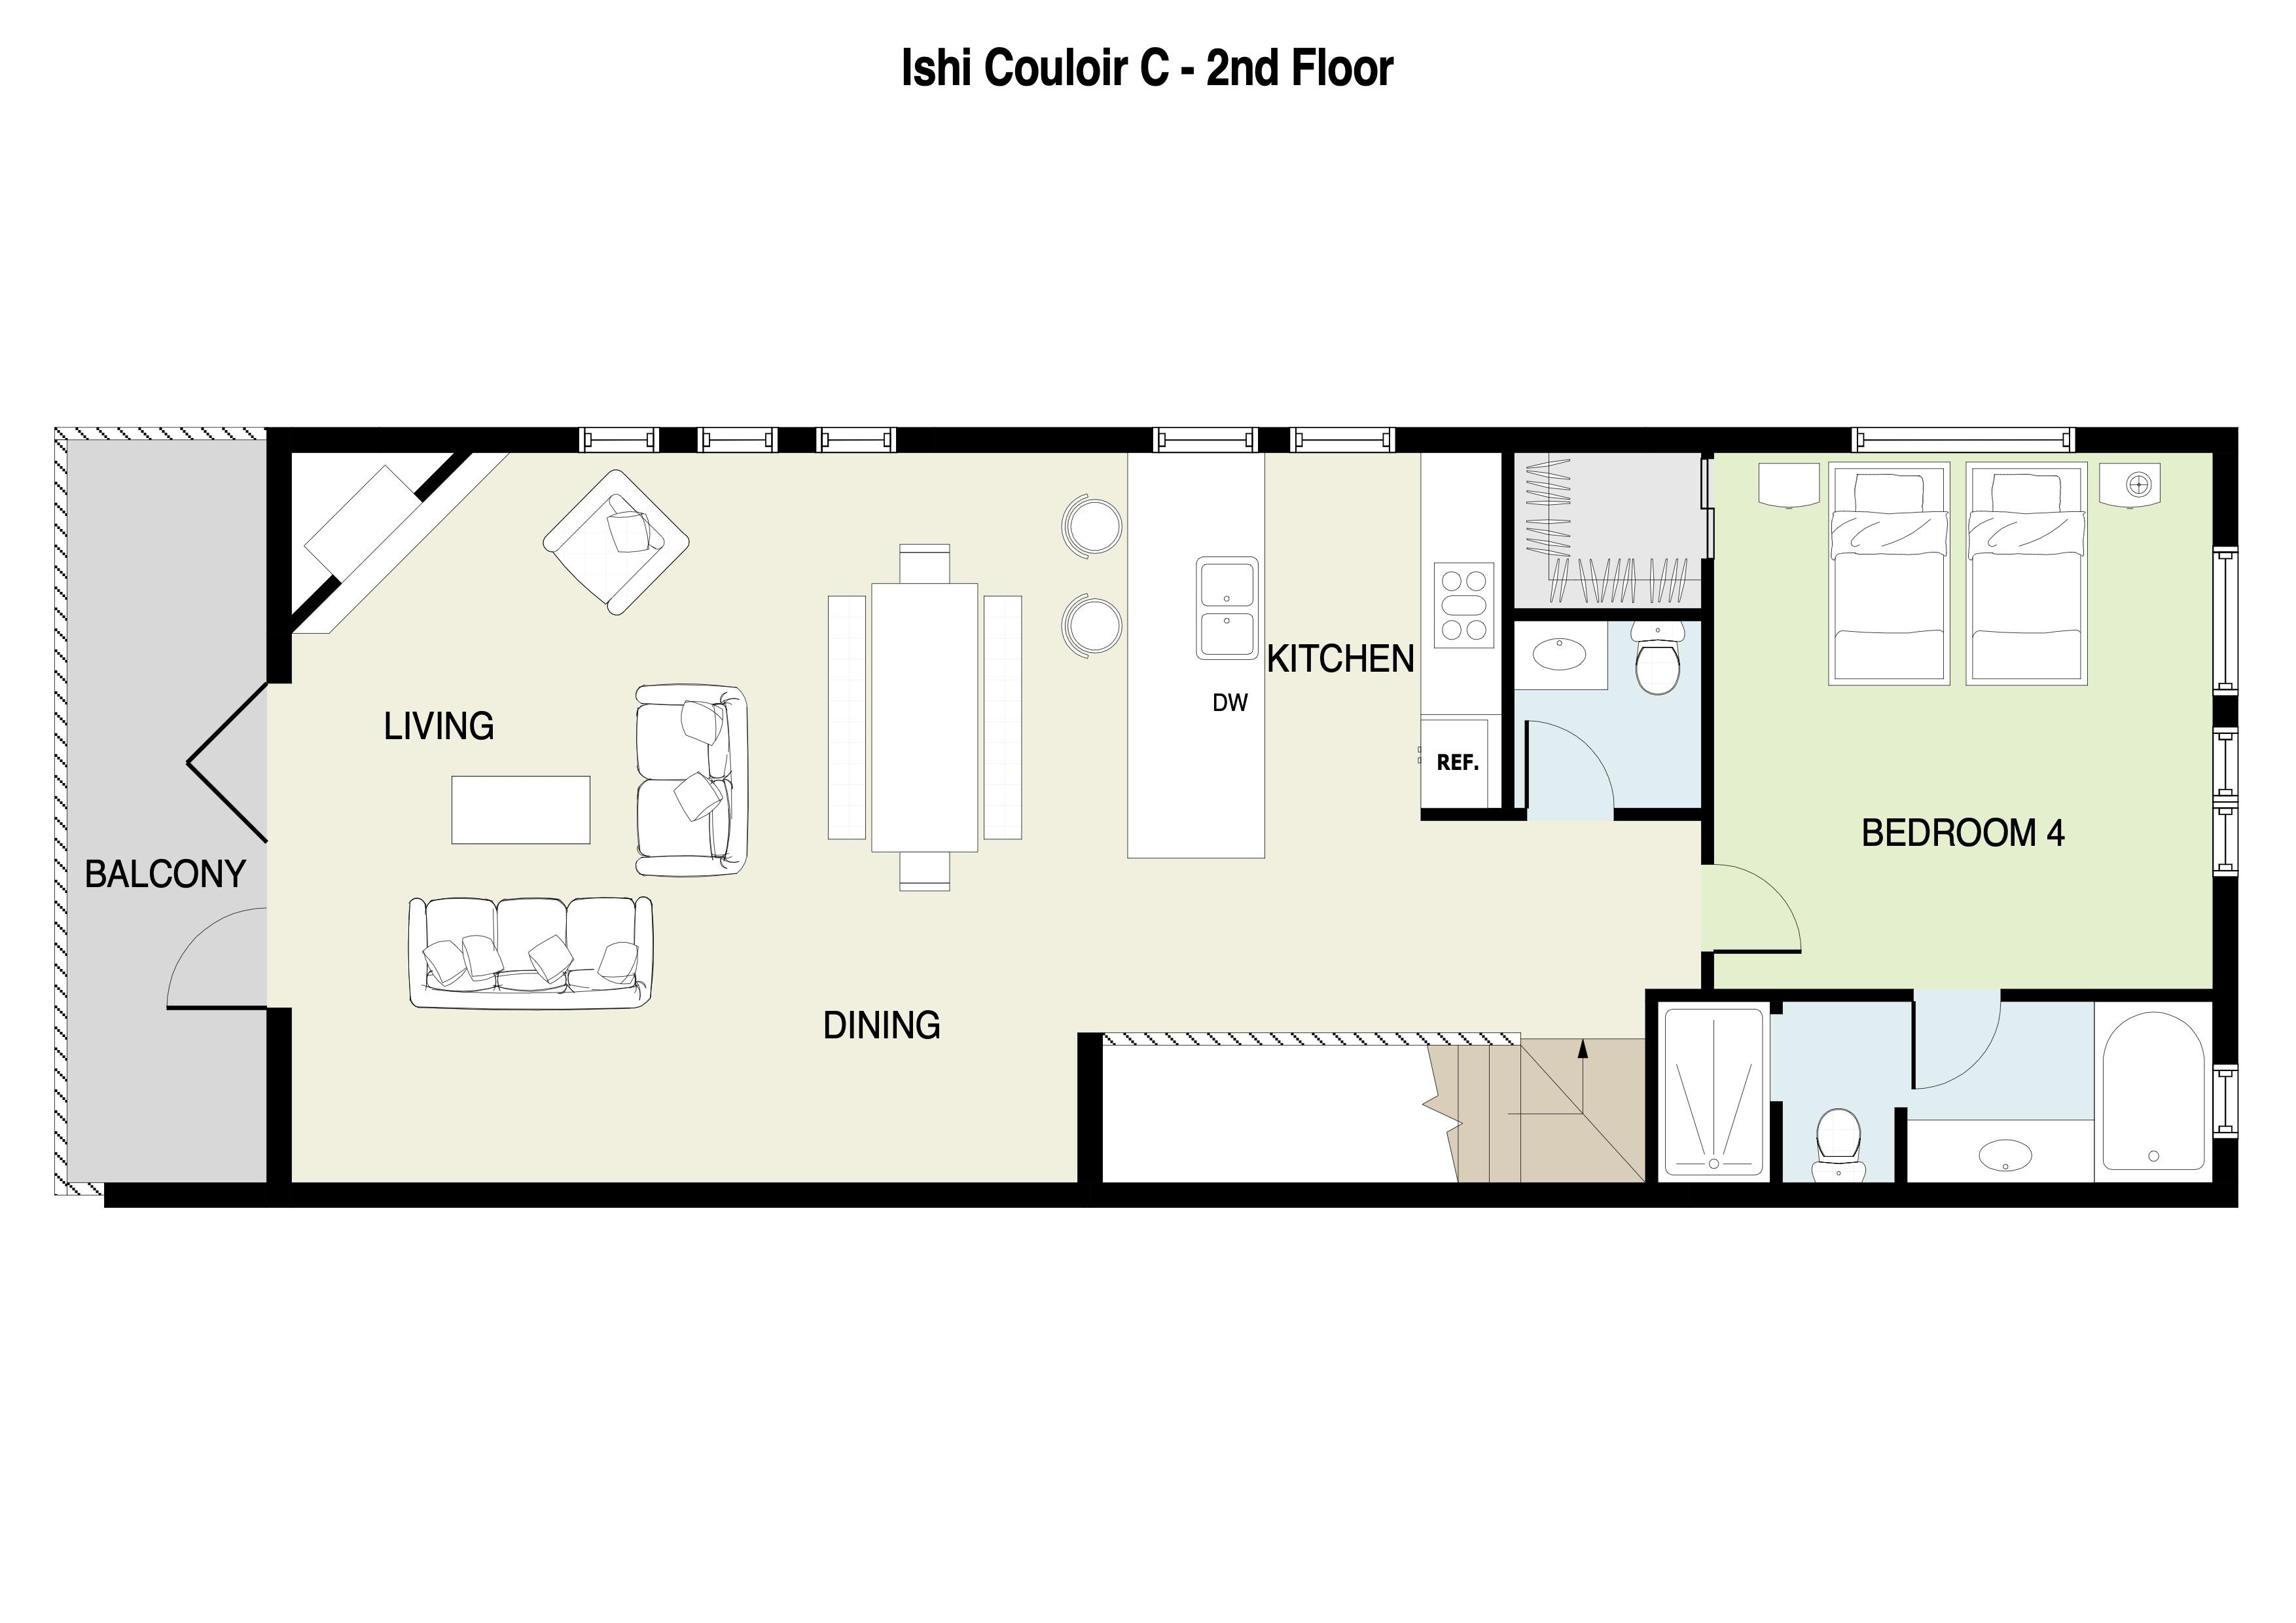 Ishi Couloir C Second Floor Plan